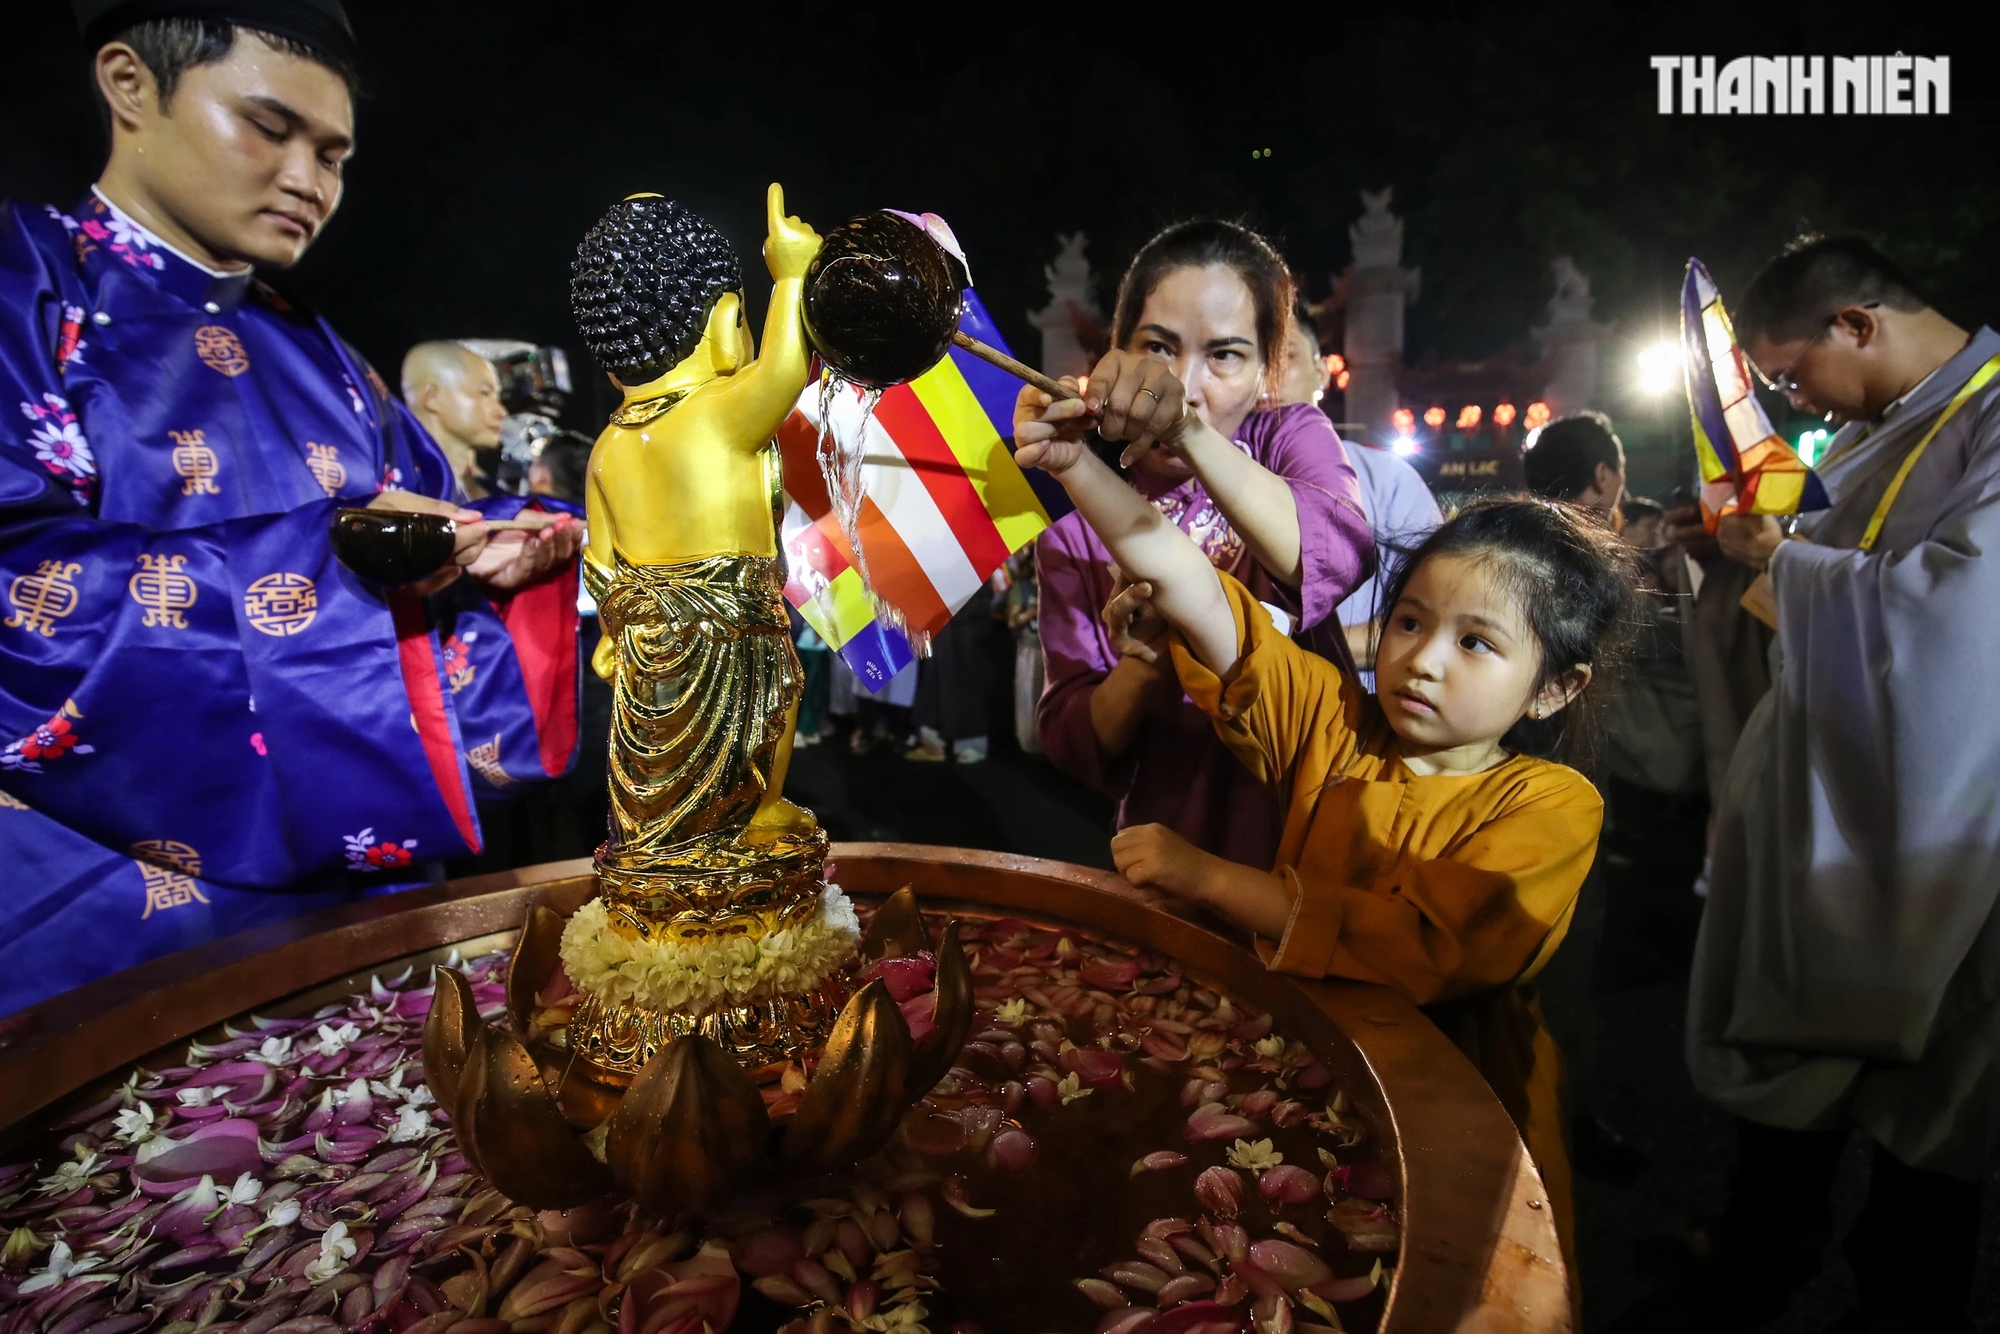 Chị Trịnh Kim Chi (ngụ Q.7) đưa con nhỏ đến Việt Nam Quốc Tự cho bé dự lễ tắm Phật, một nét sinh hoạt tâm linh cao đẹp